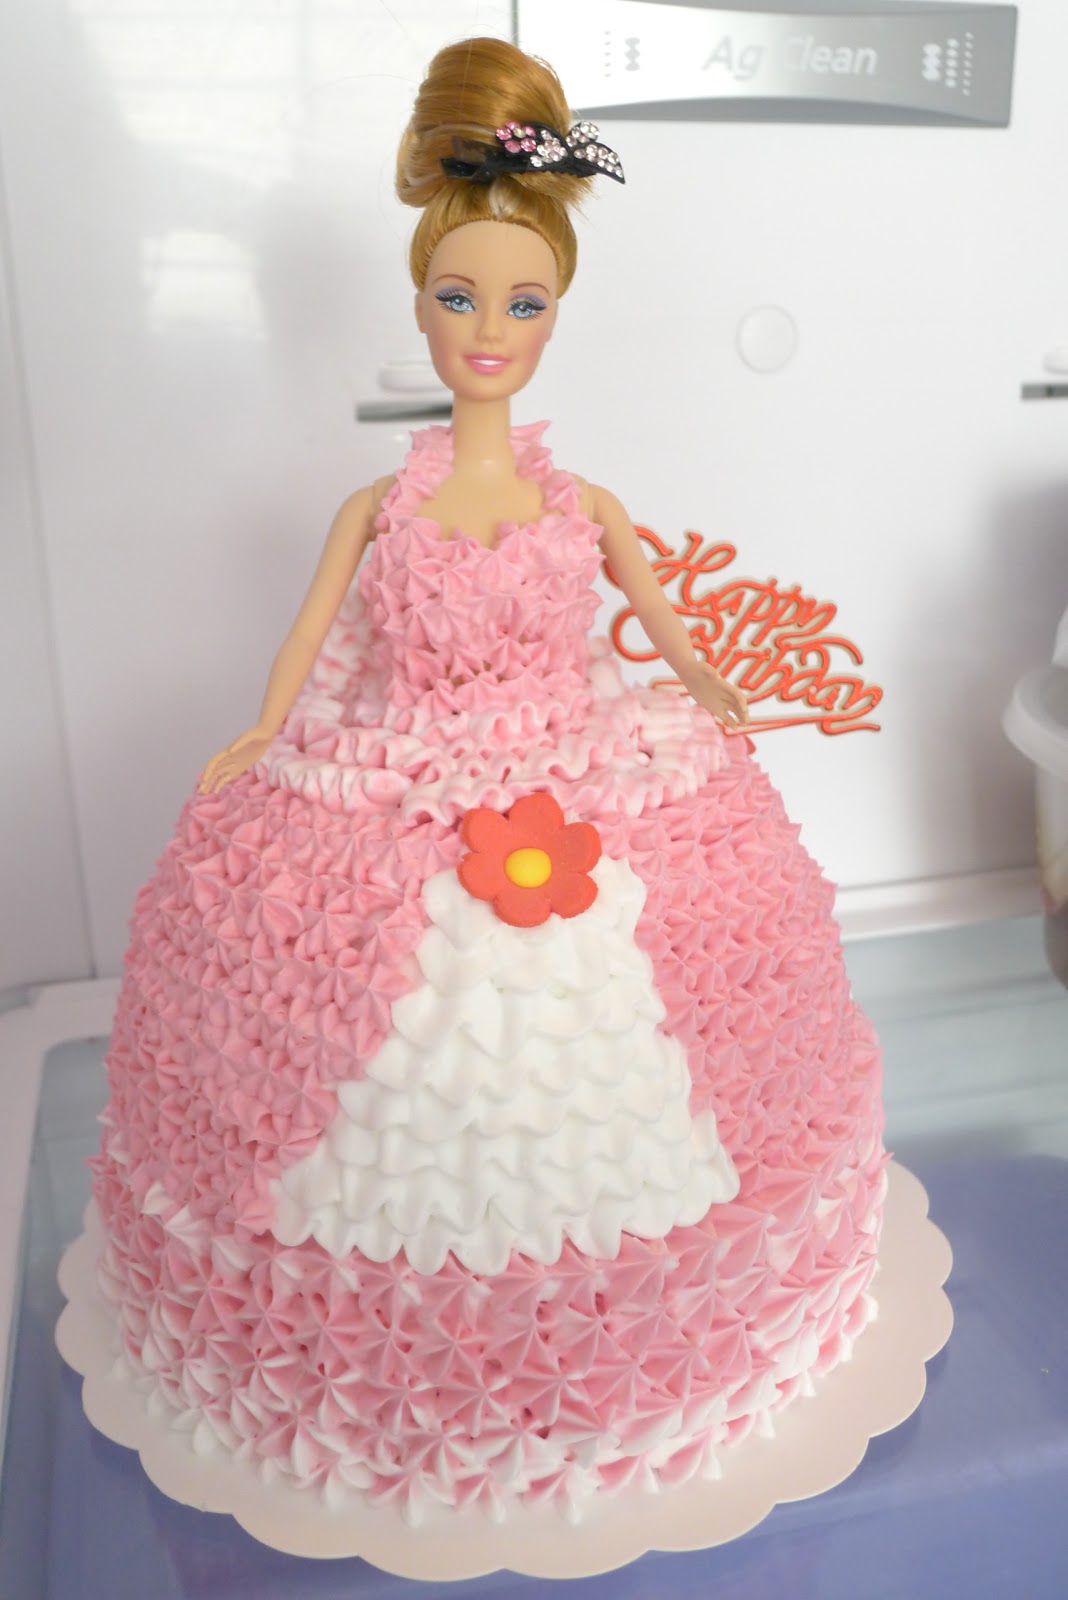 芭比蛋糕|可爱公主_蛋糕分类_芙拉维尔蛋糕网-品牌连锁蛋糕网,蛋糕预定,蛋糕网上订购送货上门,全国连锁蛋糕店,附近蛋糕送货上门